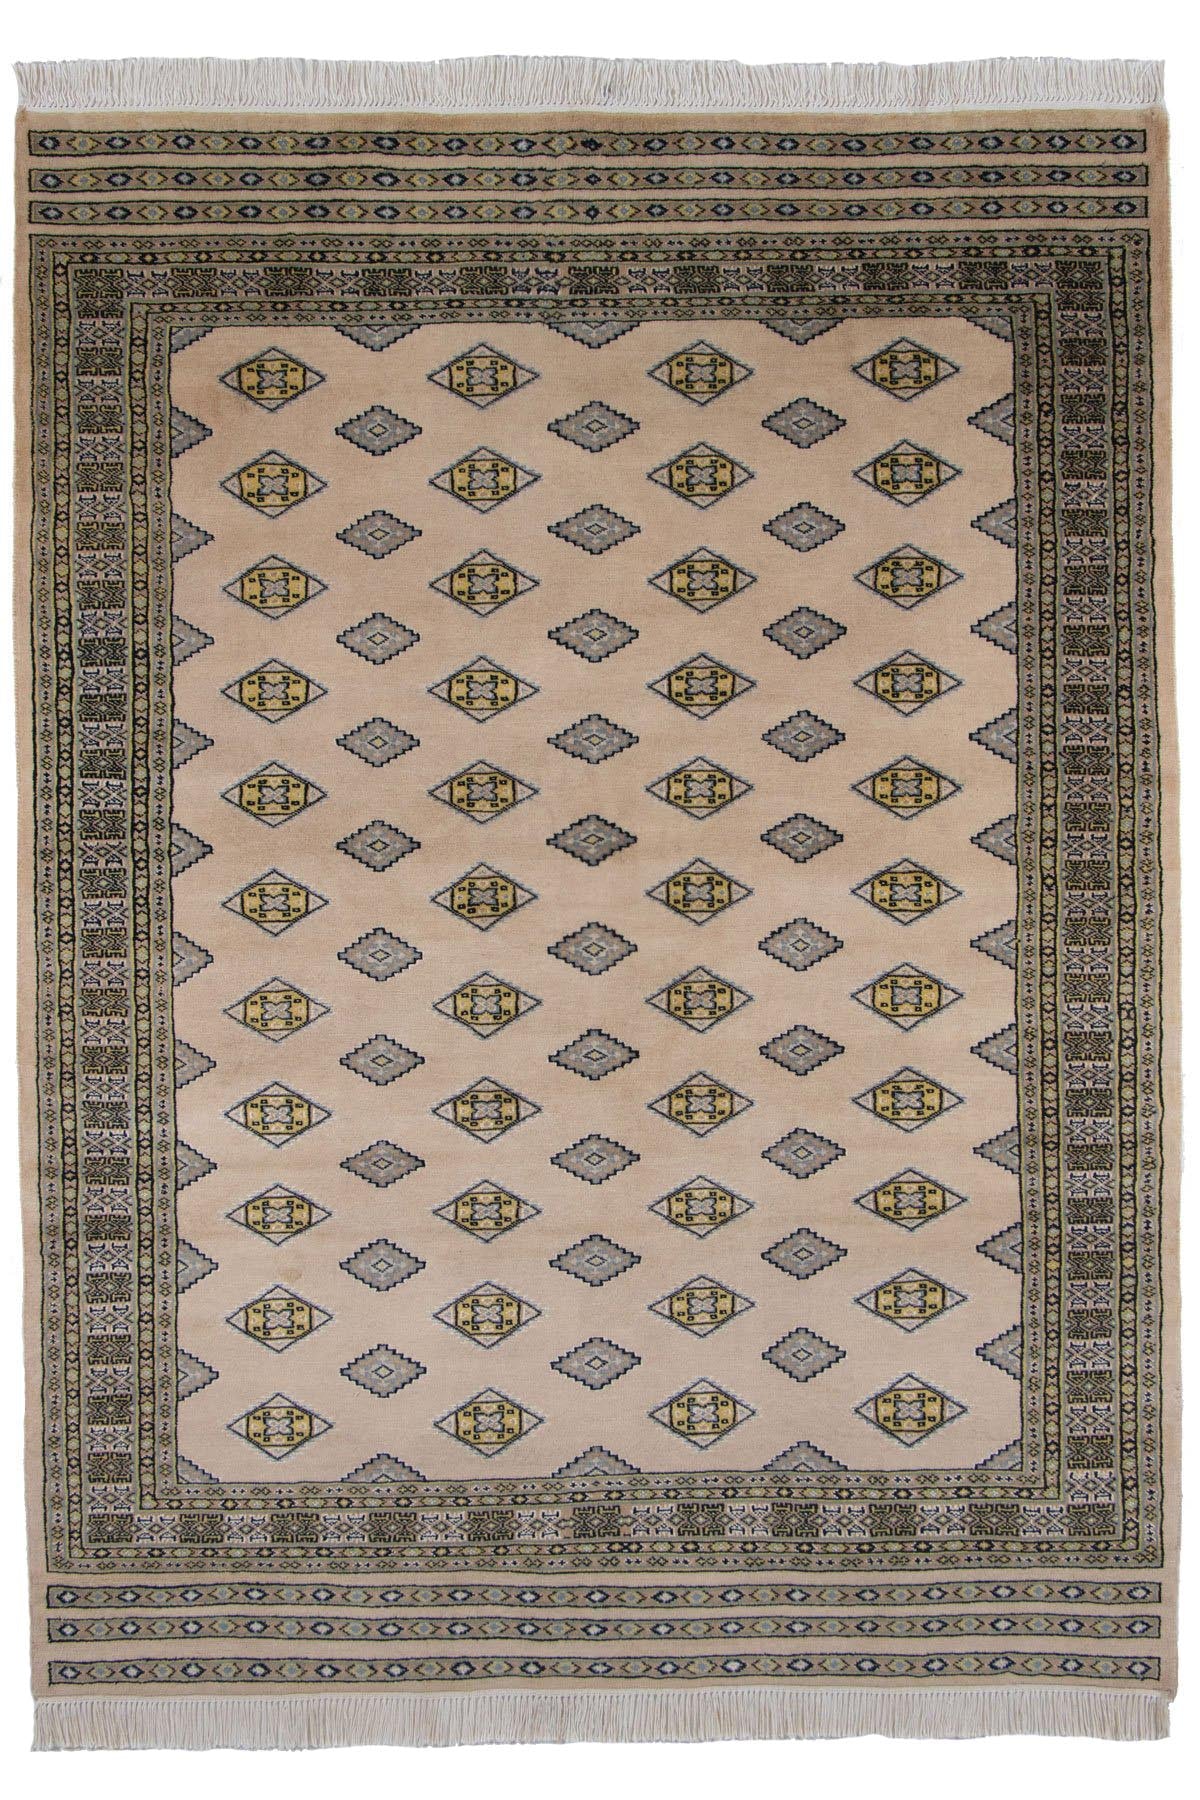 ラホール産の手織りパキスタン絨毯